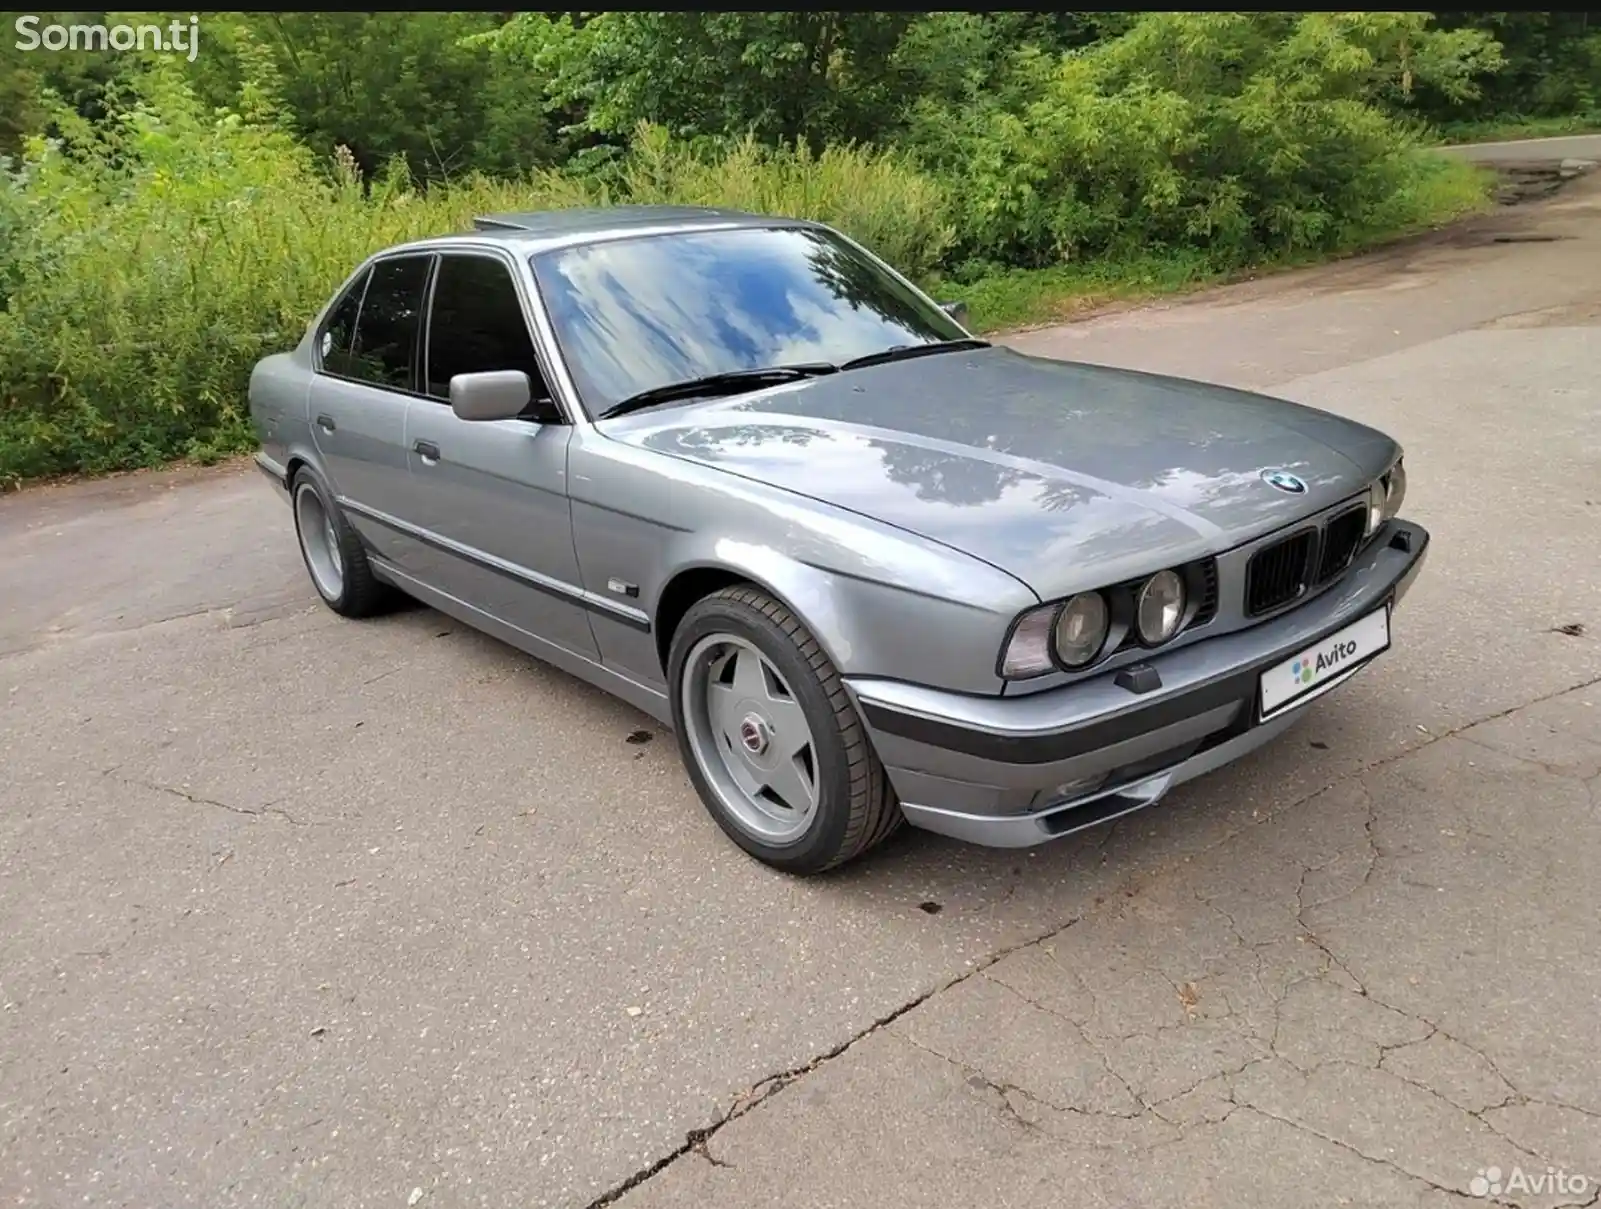 Диски BMW R16-5